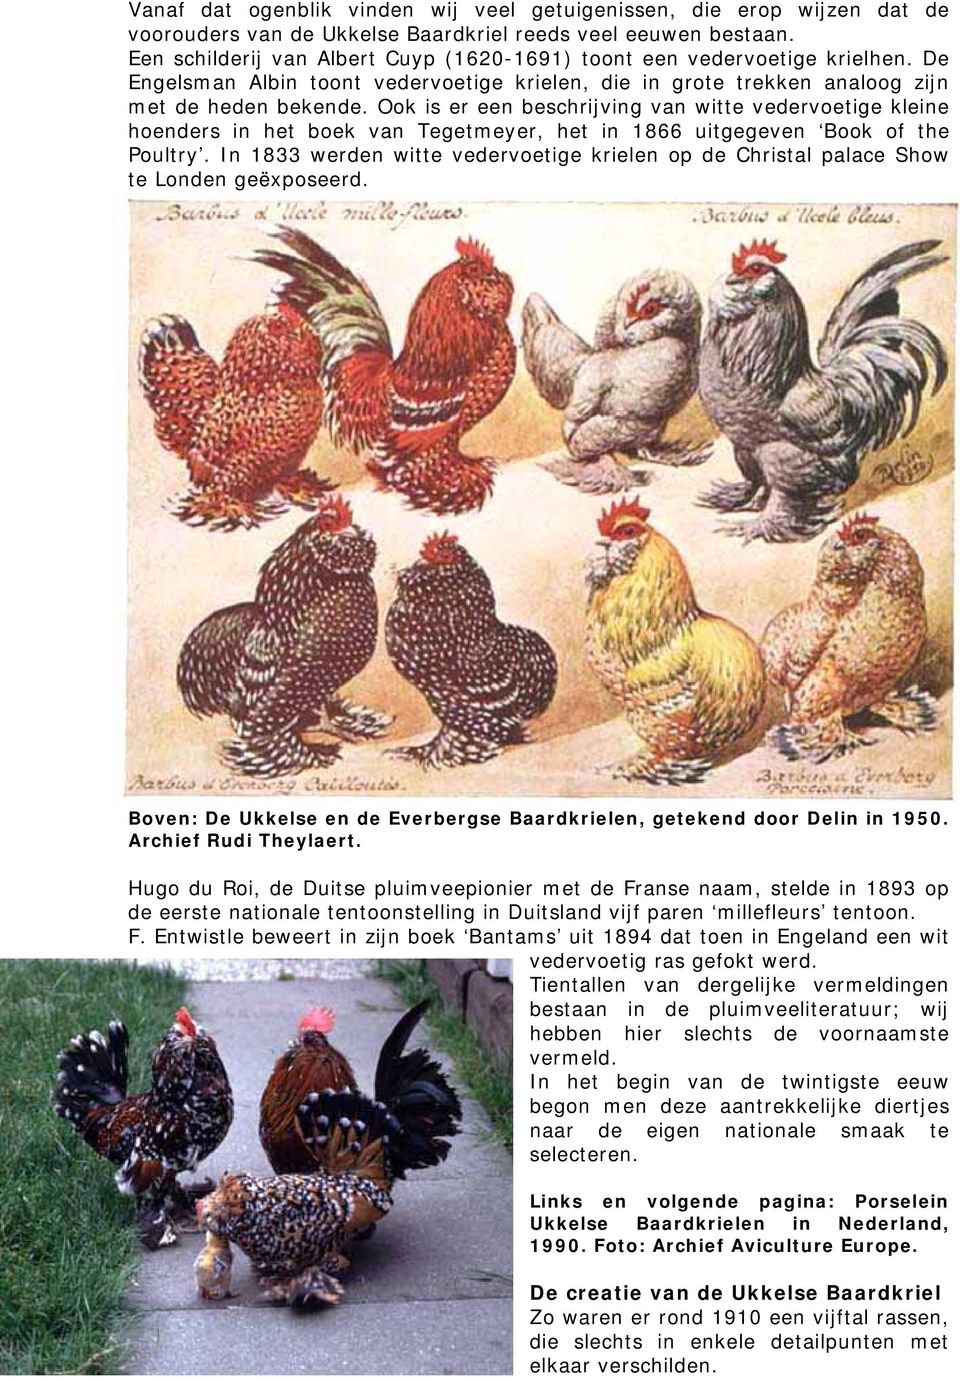 Ook is er een beschrijving van witte vedervoetige kleine hoenders in het boek van Tegetmeyer, het in 1866 uitgegeven Book of the Poultry.